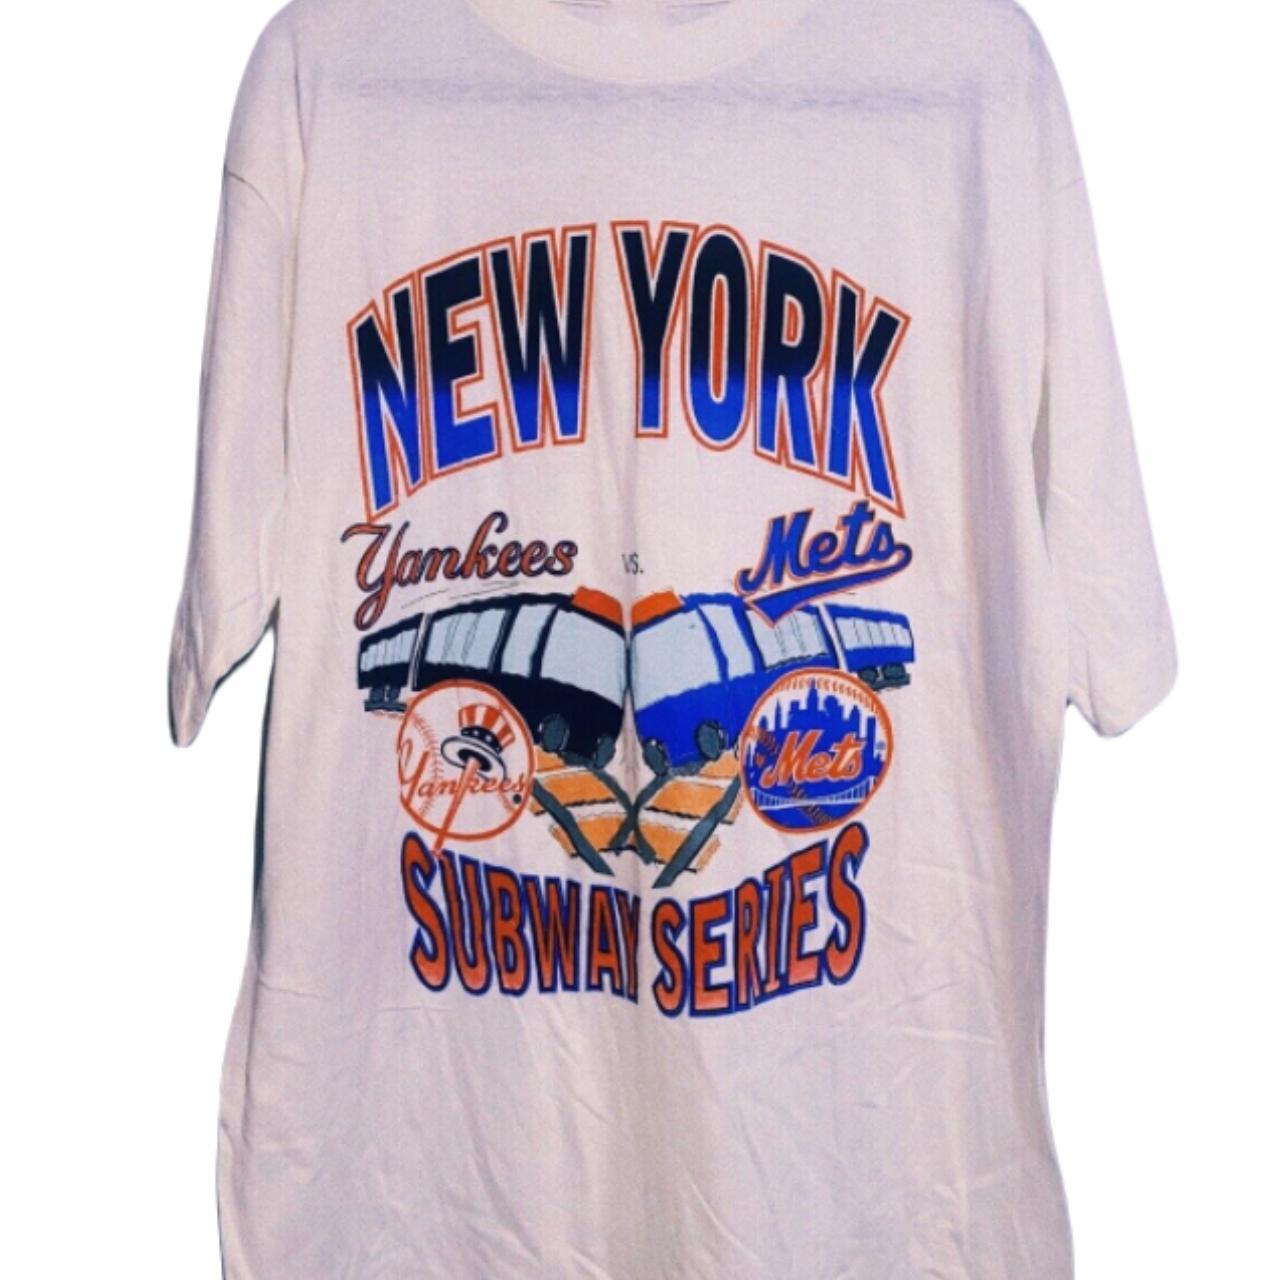 Subway Series 2000 Yankees Vs Mets T-shirt